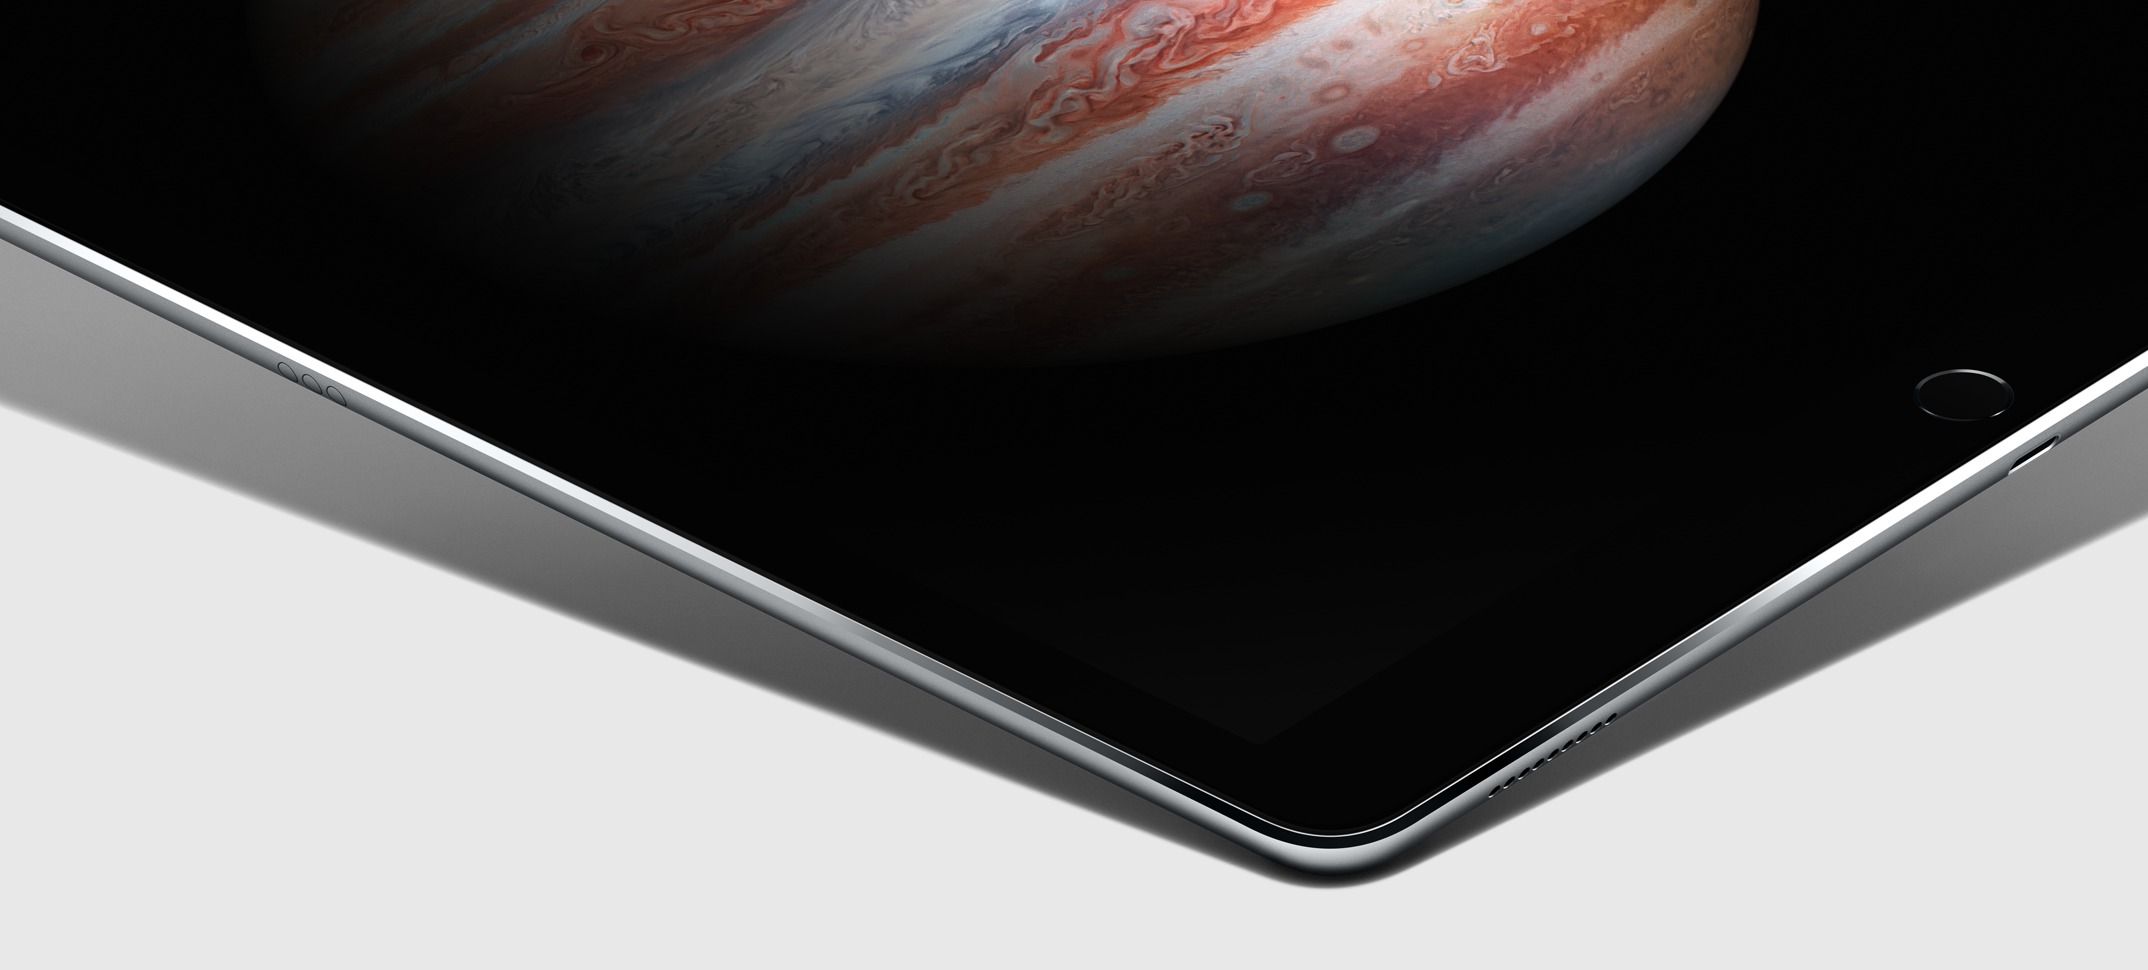 iPad Air 3 får trolig fire høyttalere, bedre panel som bruker mindre strøm, Smart Connector og bedre kameraer med Blitz - også ytelsen skal oppgraderes.